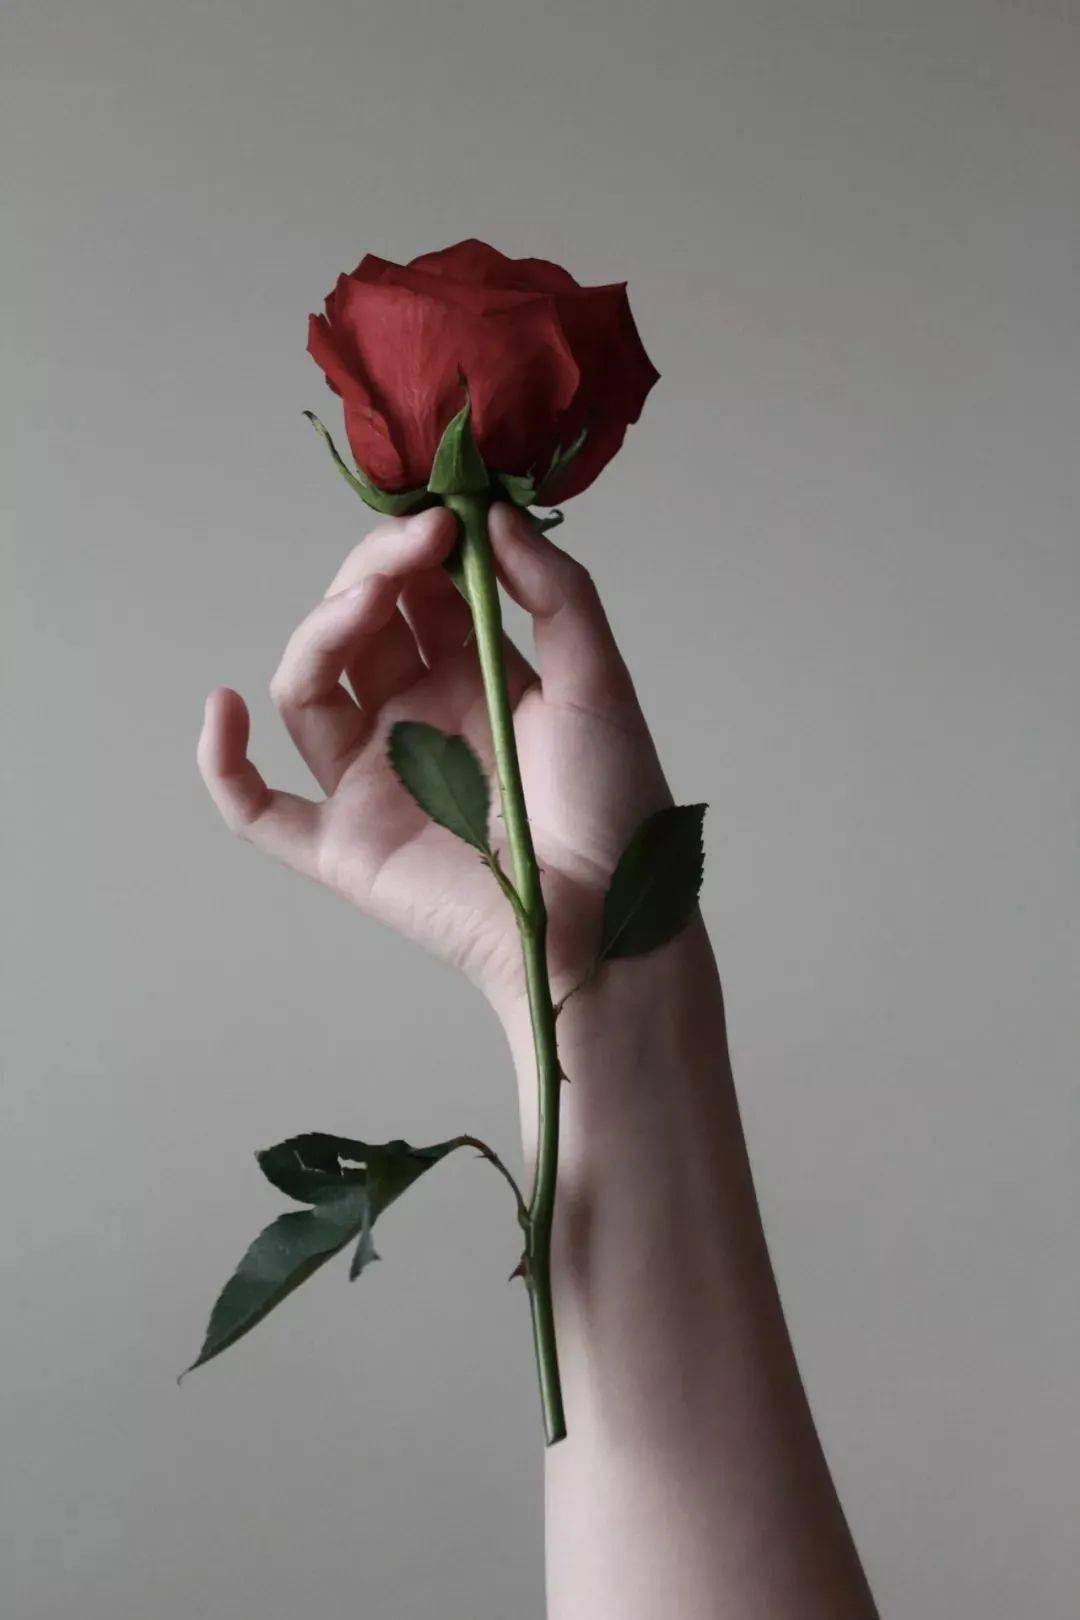 玫瑰刺穿手掌流血图片图片